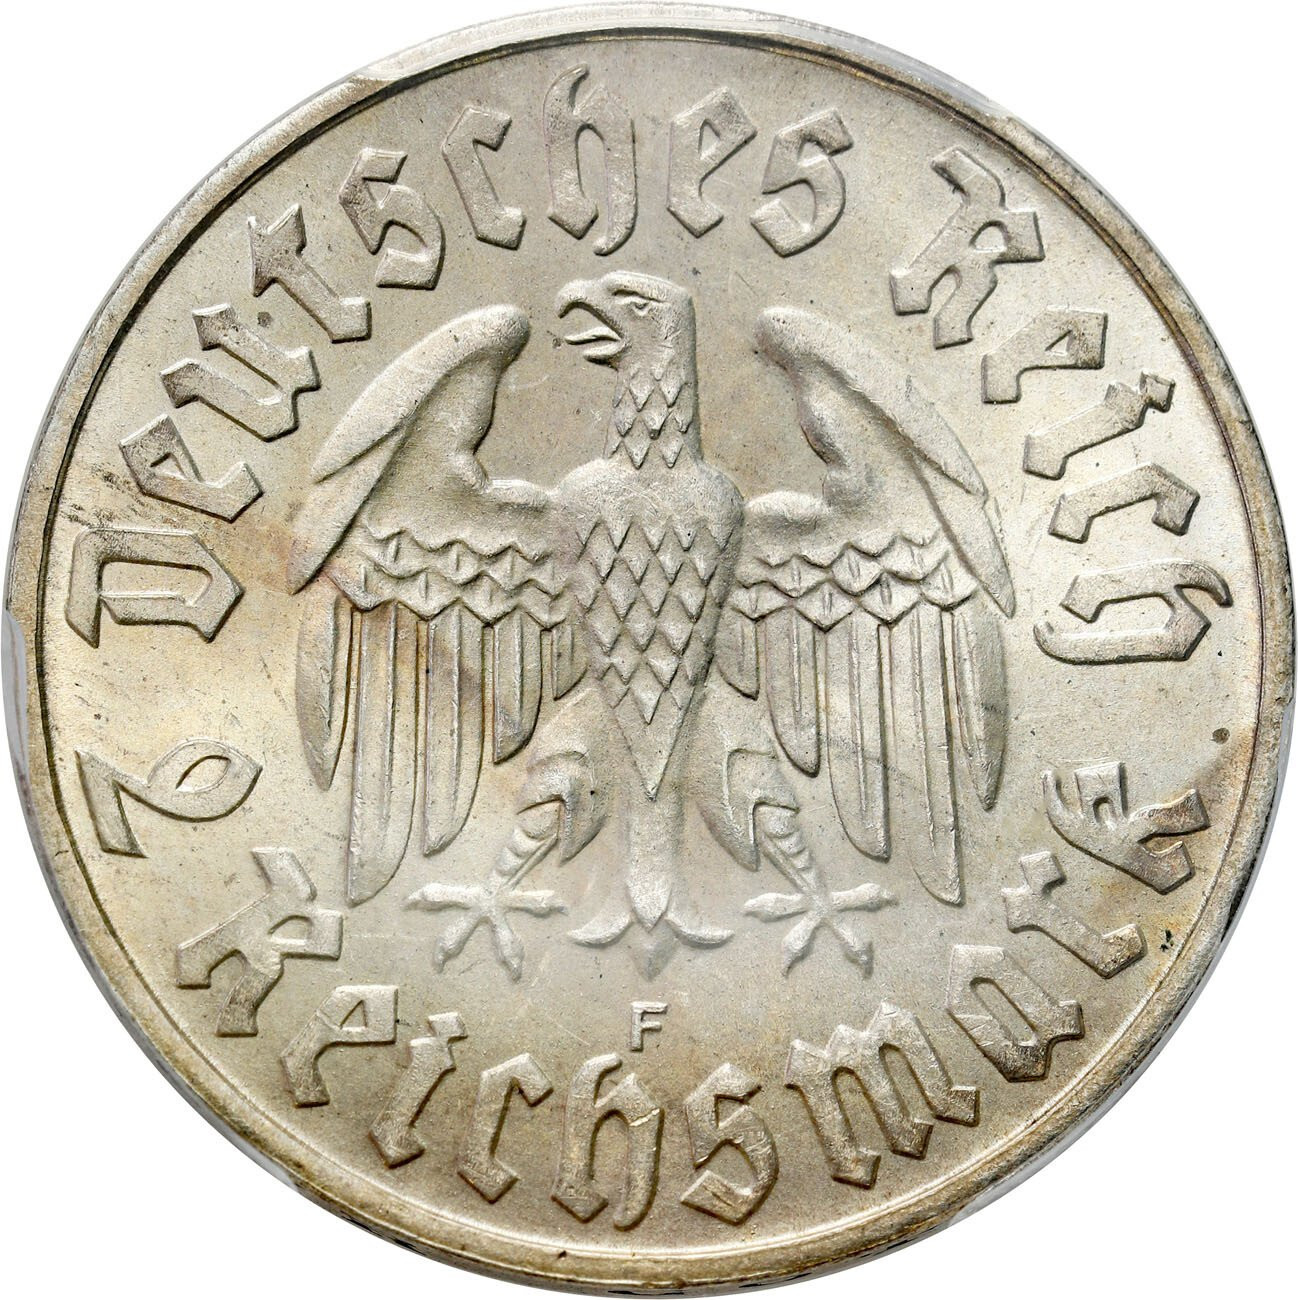 Niemcy, Weimar. 2 marki 1933 F, Stuttgart PCGS MS64 - PIĘKNE